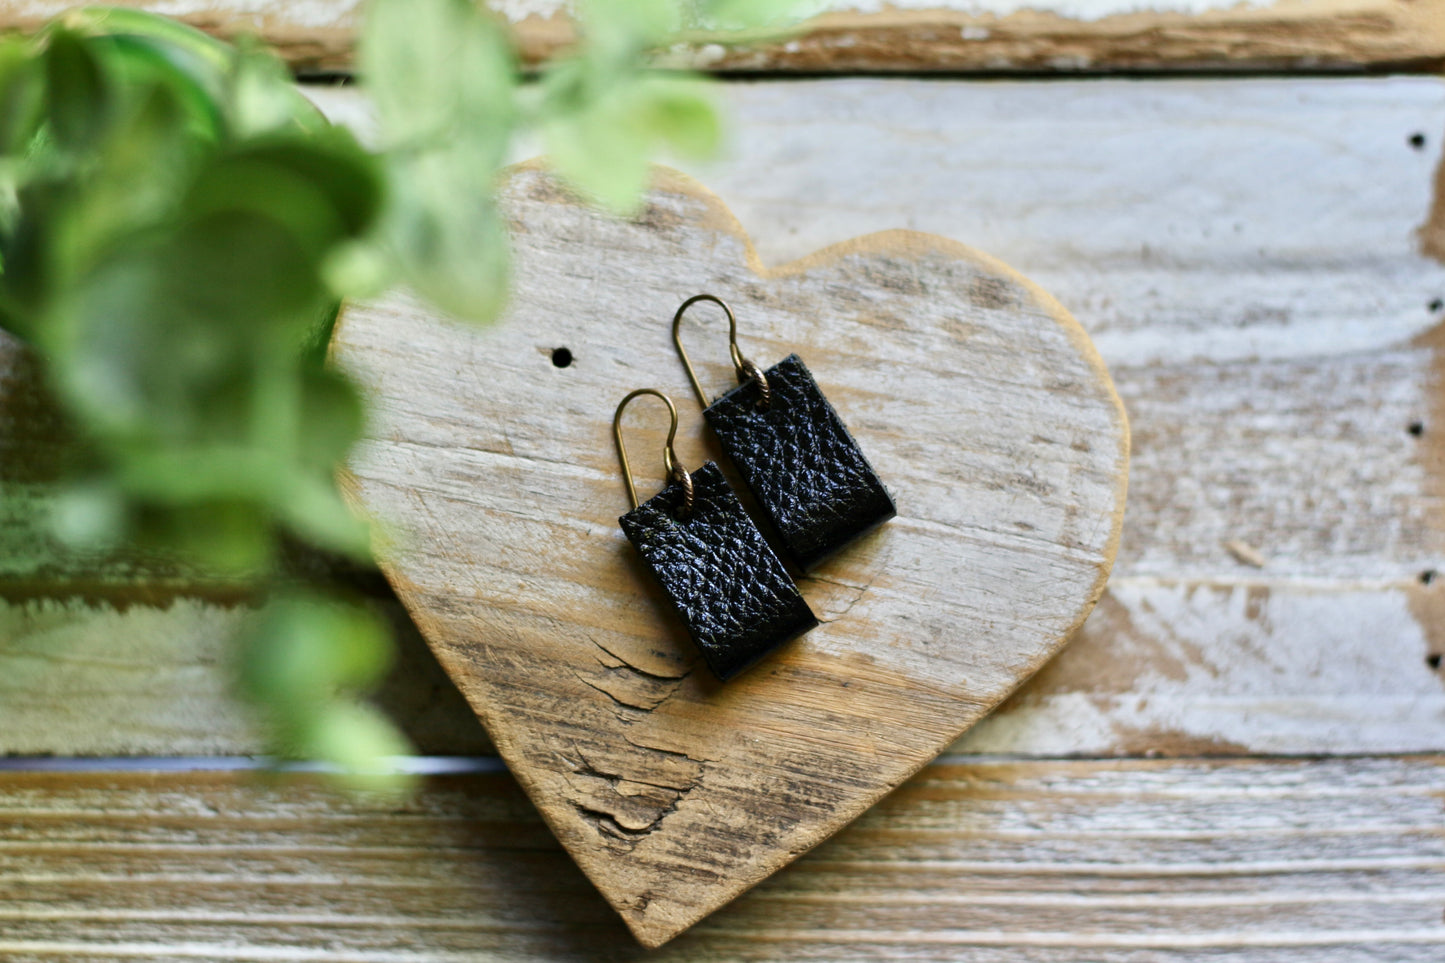 simple loop genuine leather earrings in shimmery black